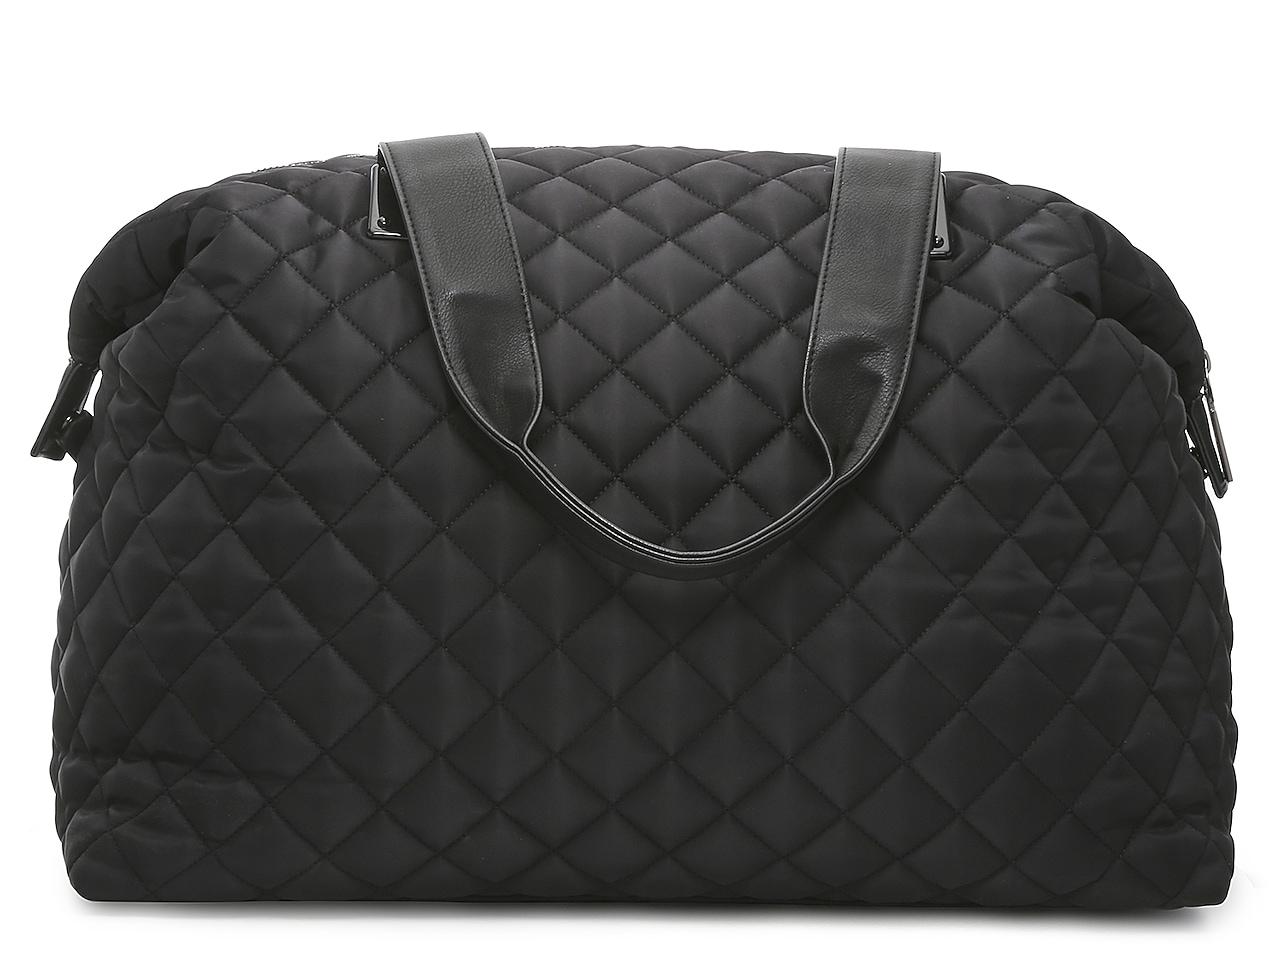 Buy Steve Madden Black BSTRIKE Large Duffle Bag for Women Online @ Tata  CLiQ Luxury